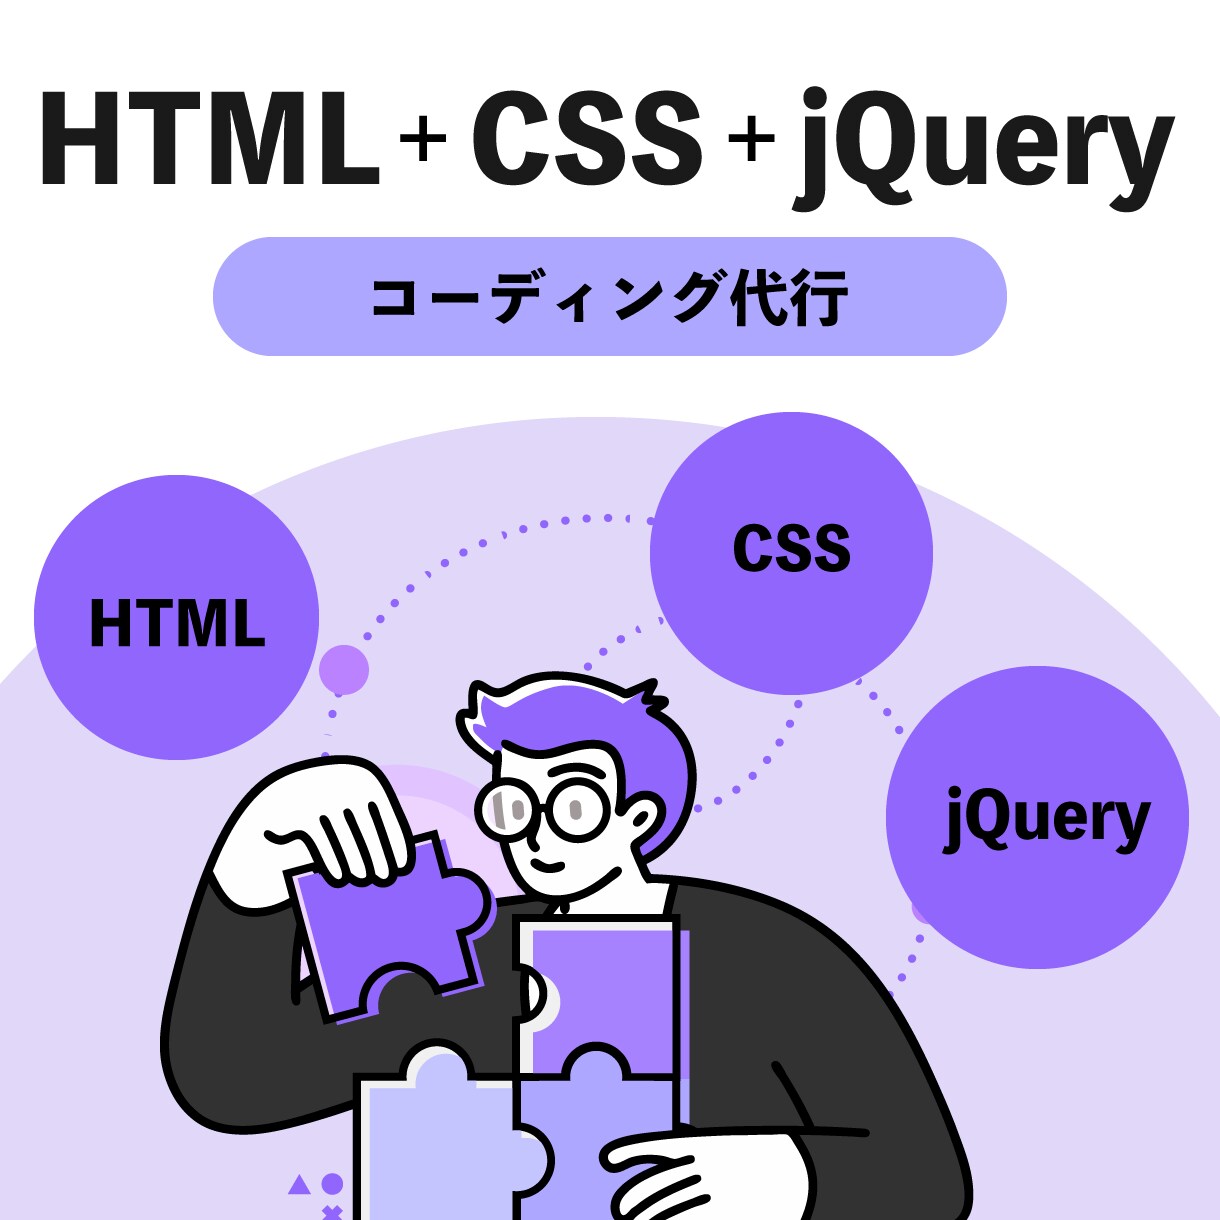 実績あるコーダーがコーディングします HTML+CSS+jQuery / レスポンシブ対応可能です イメージ1